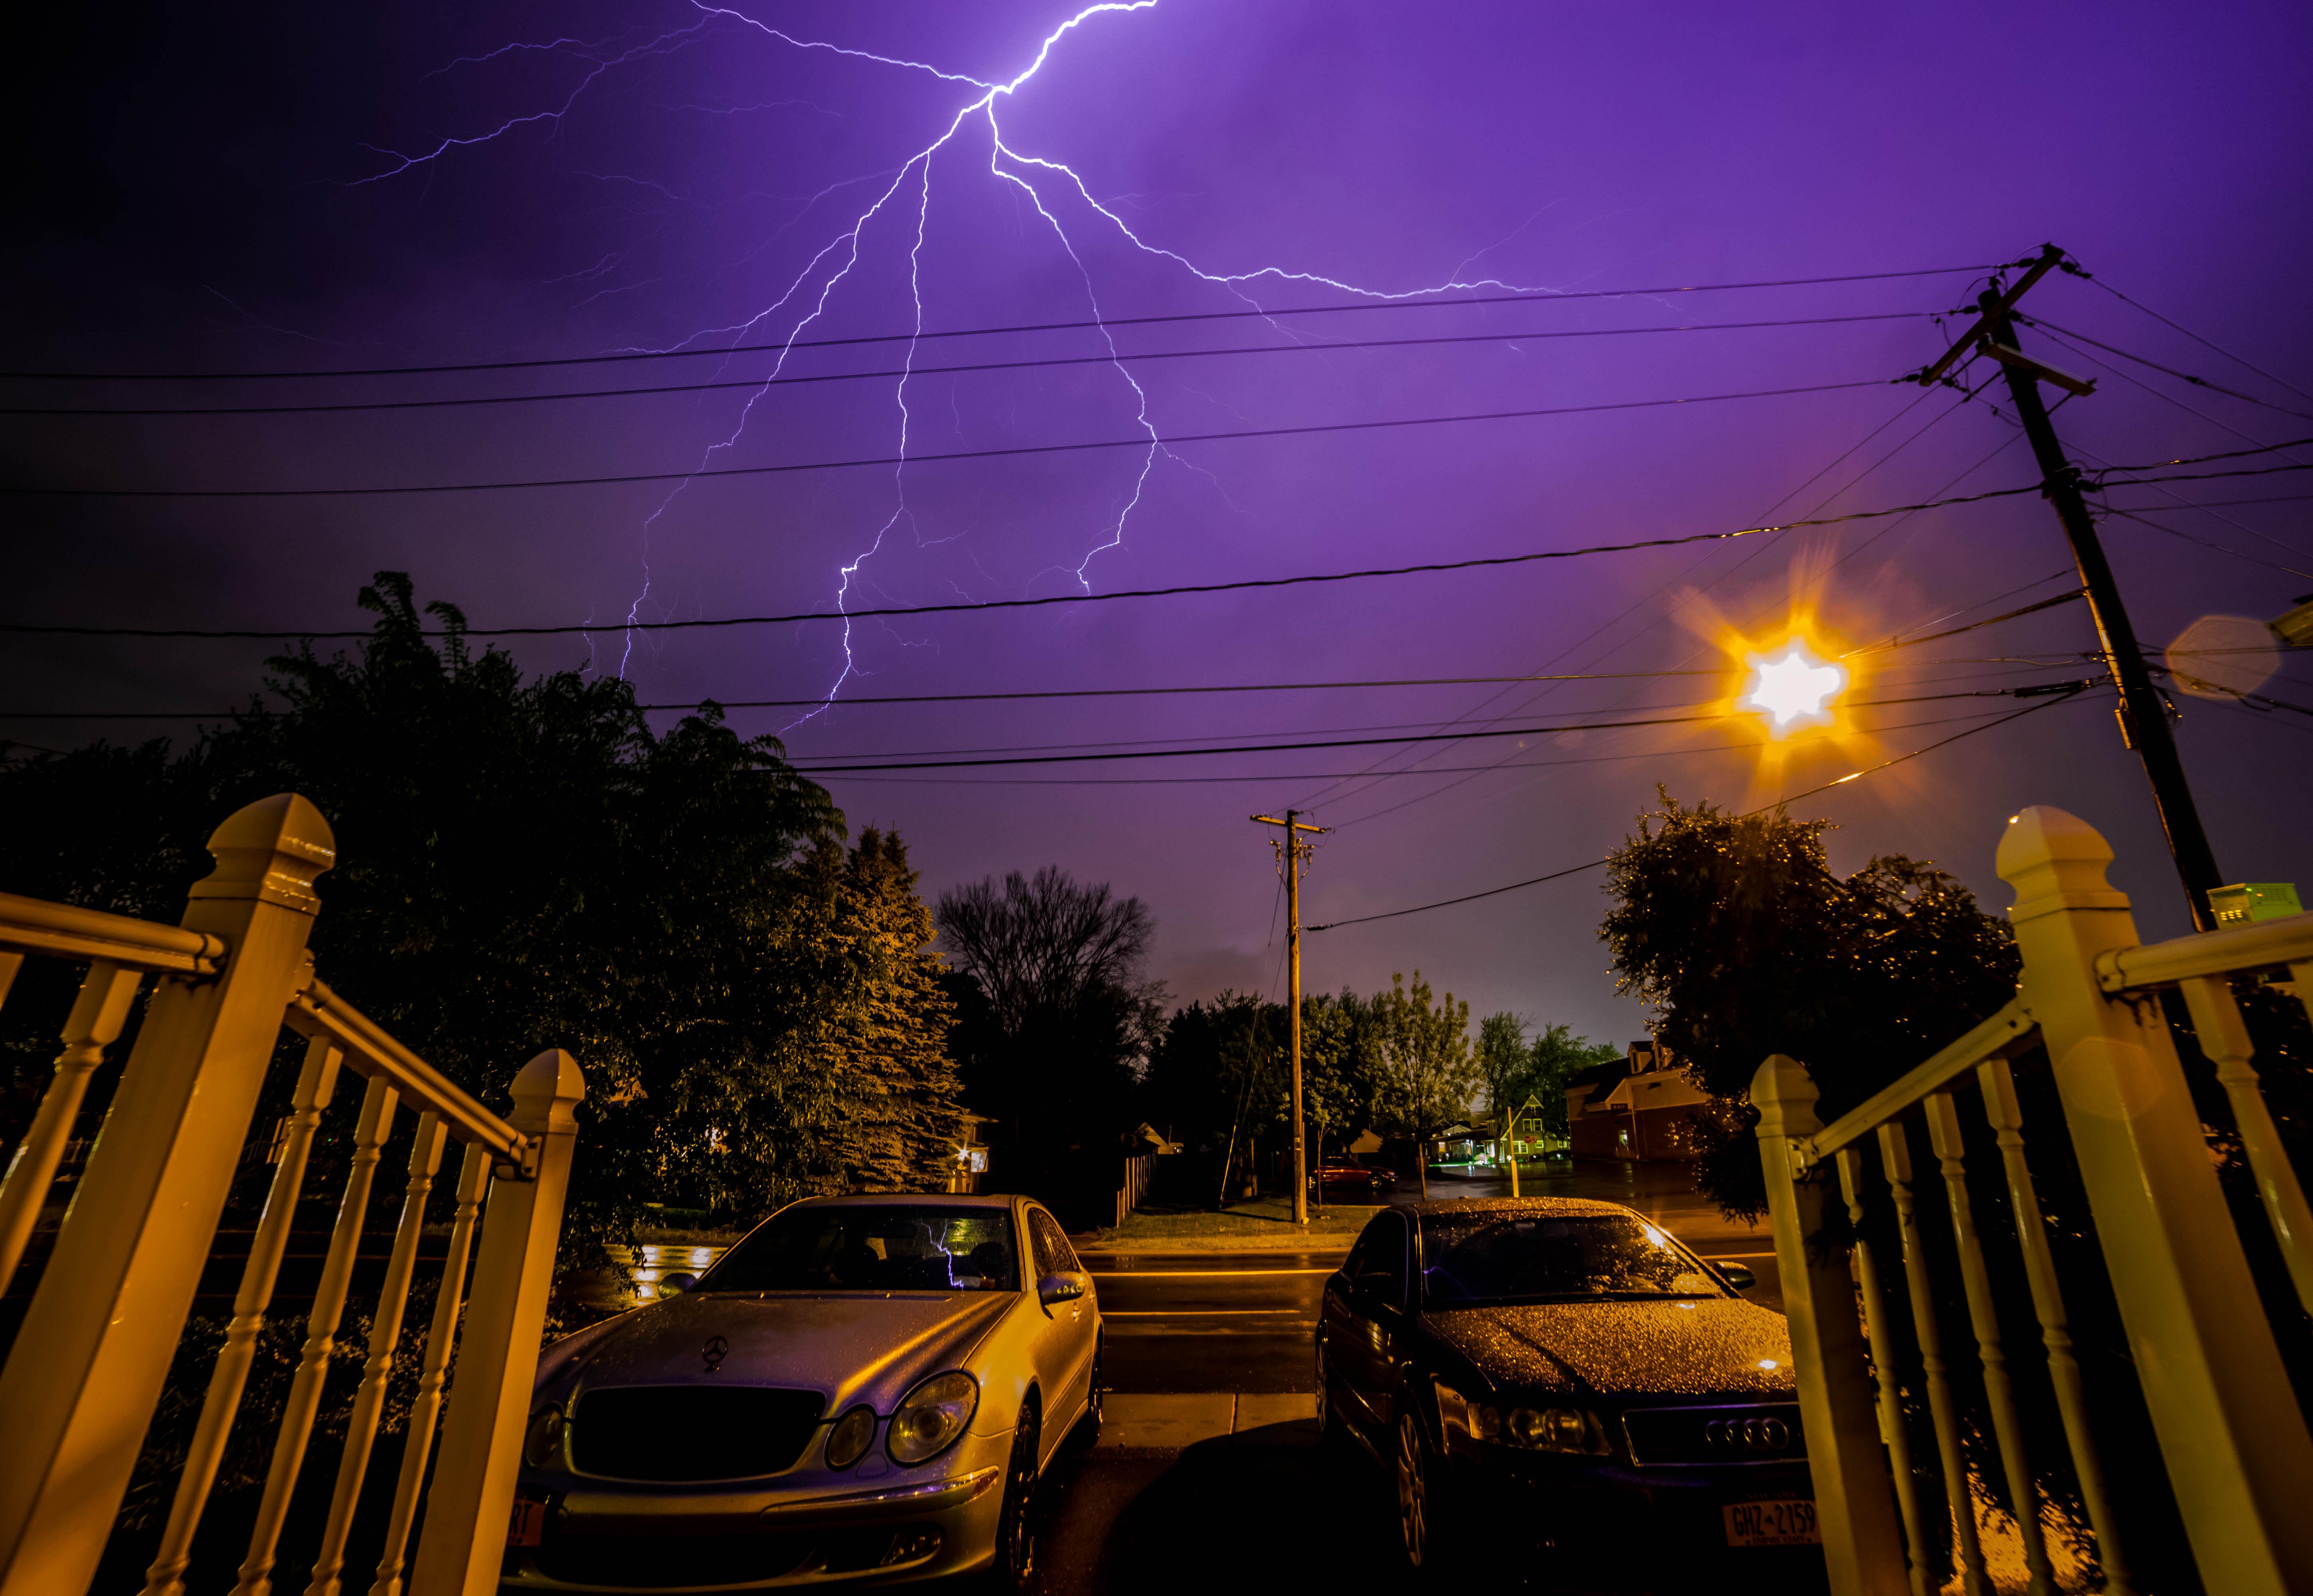 lightning strikes near homes in Buffalo, NY